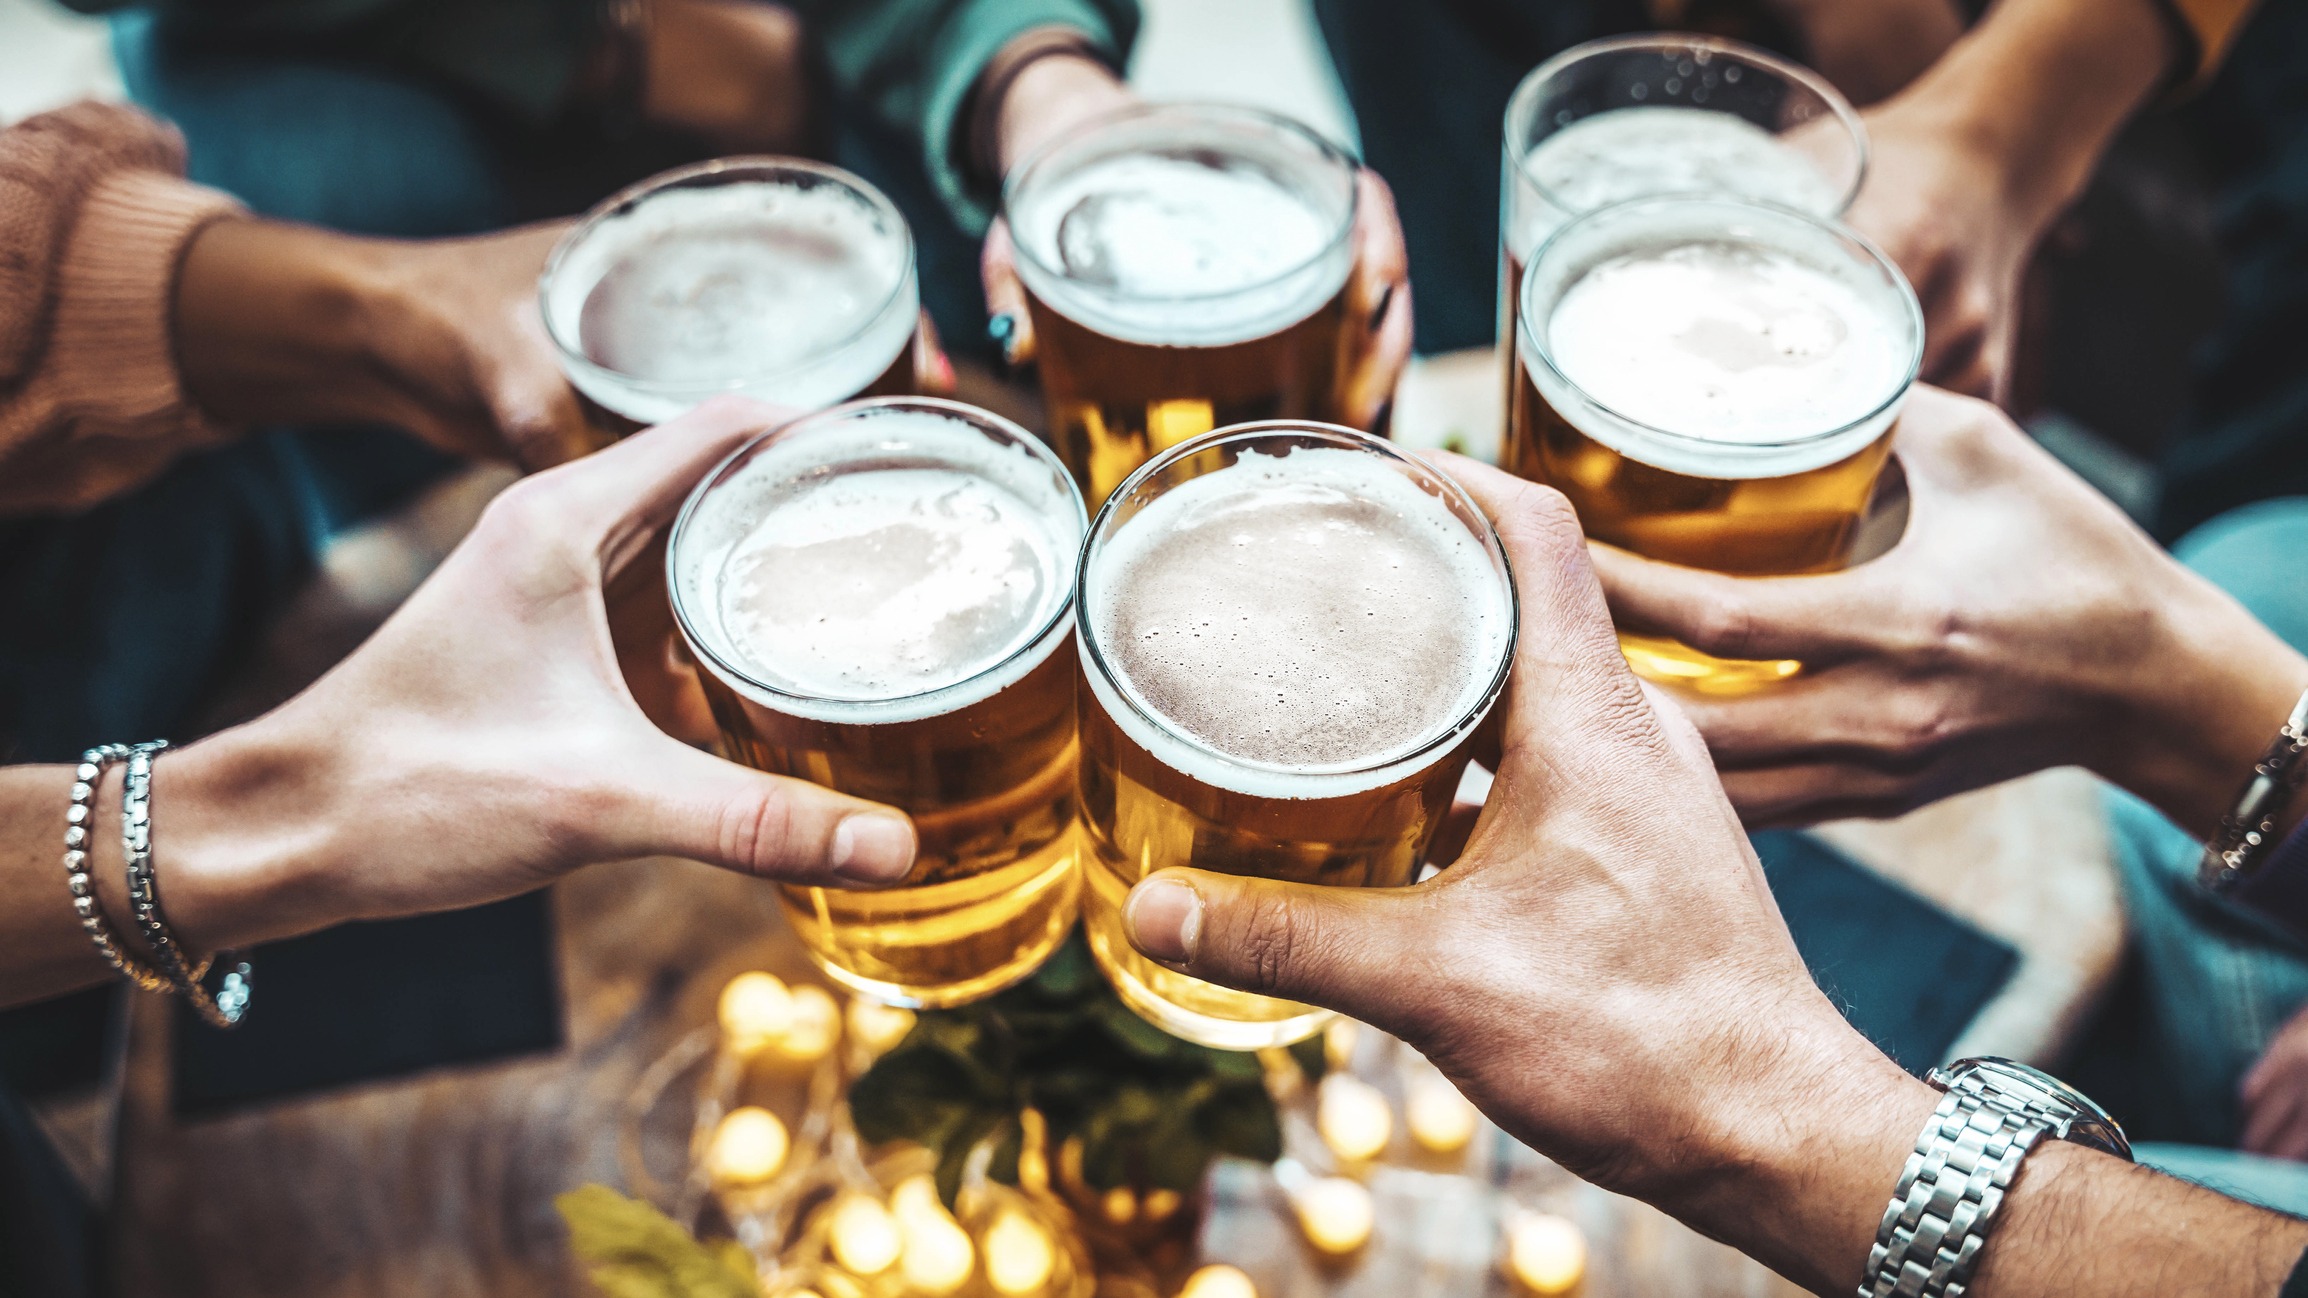 La birra e la drinkflation: perché c’entra con i consumatori